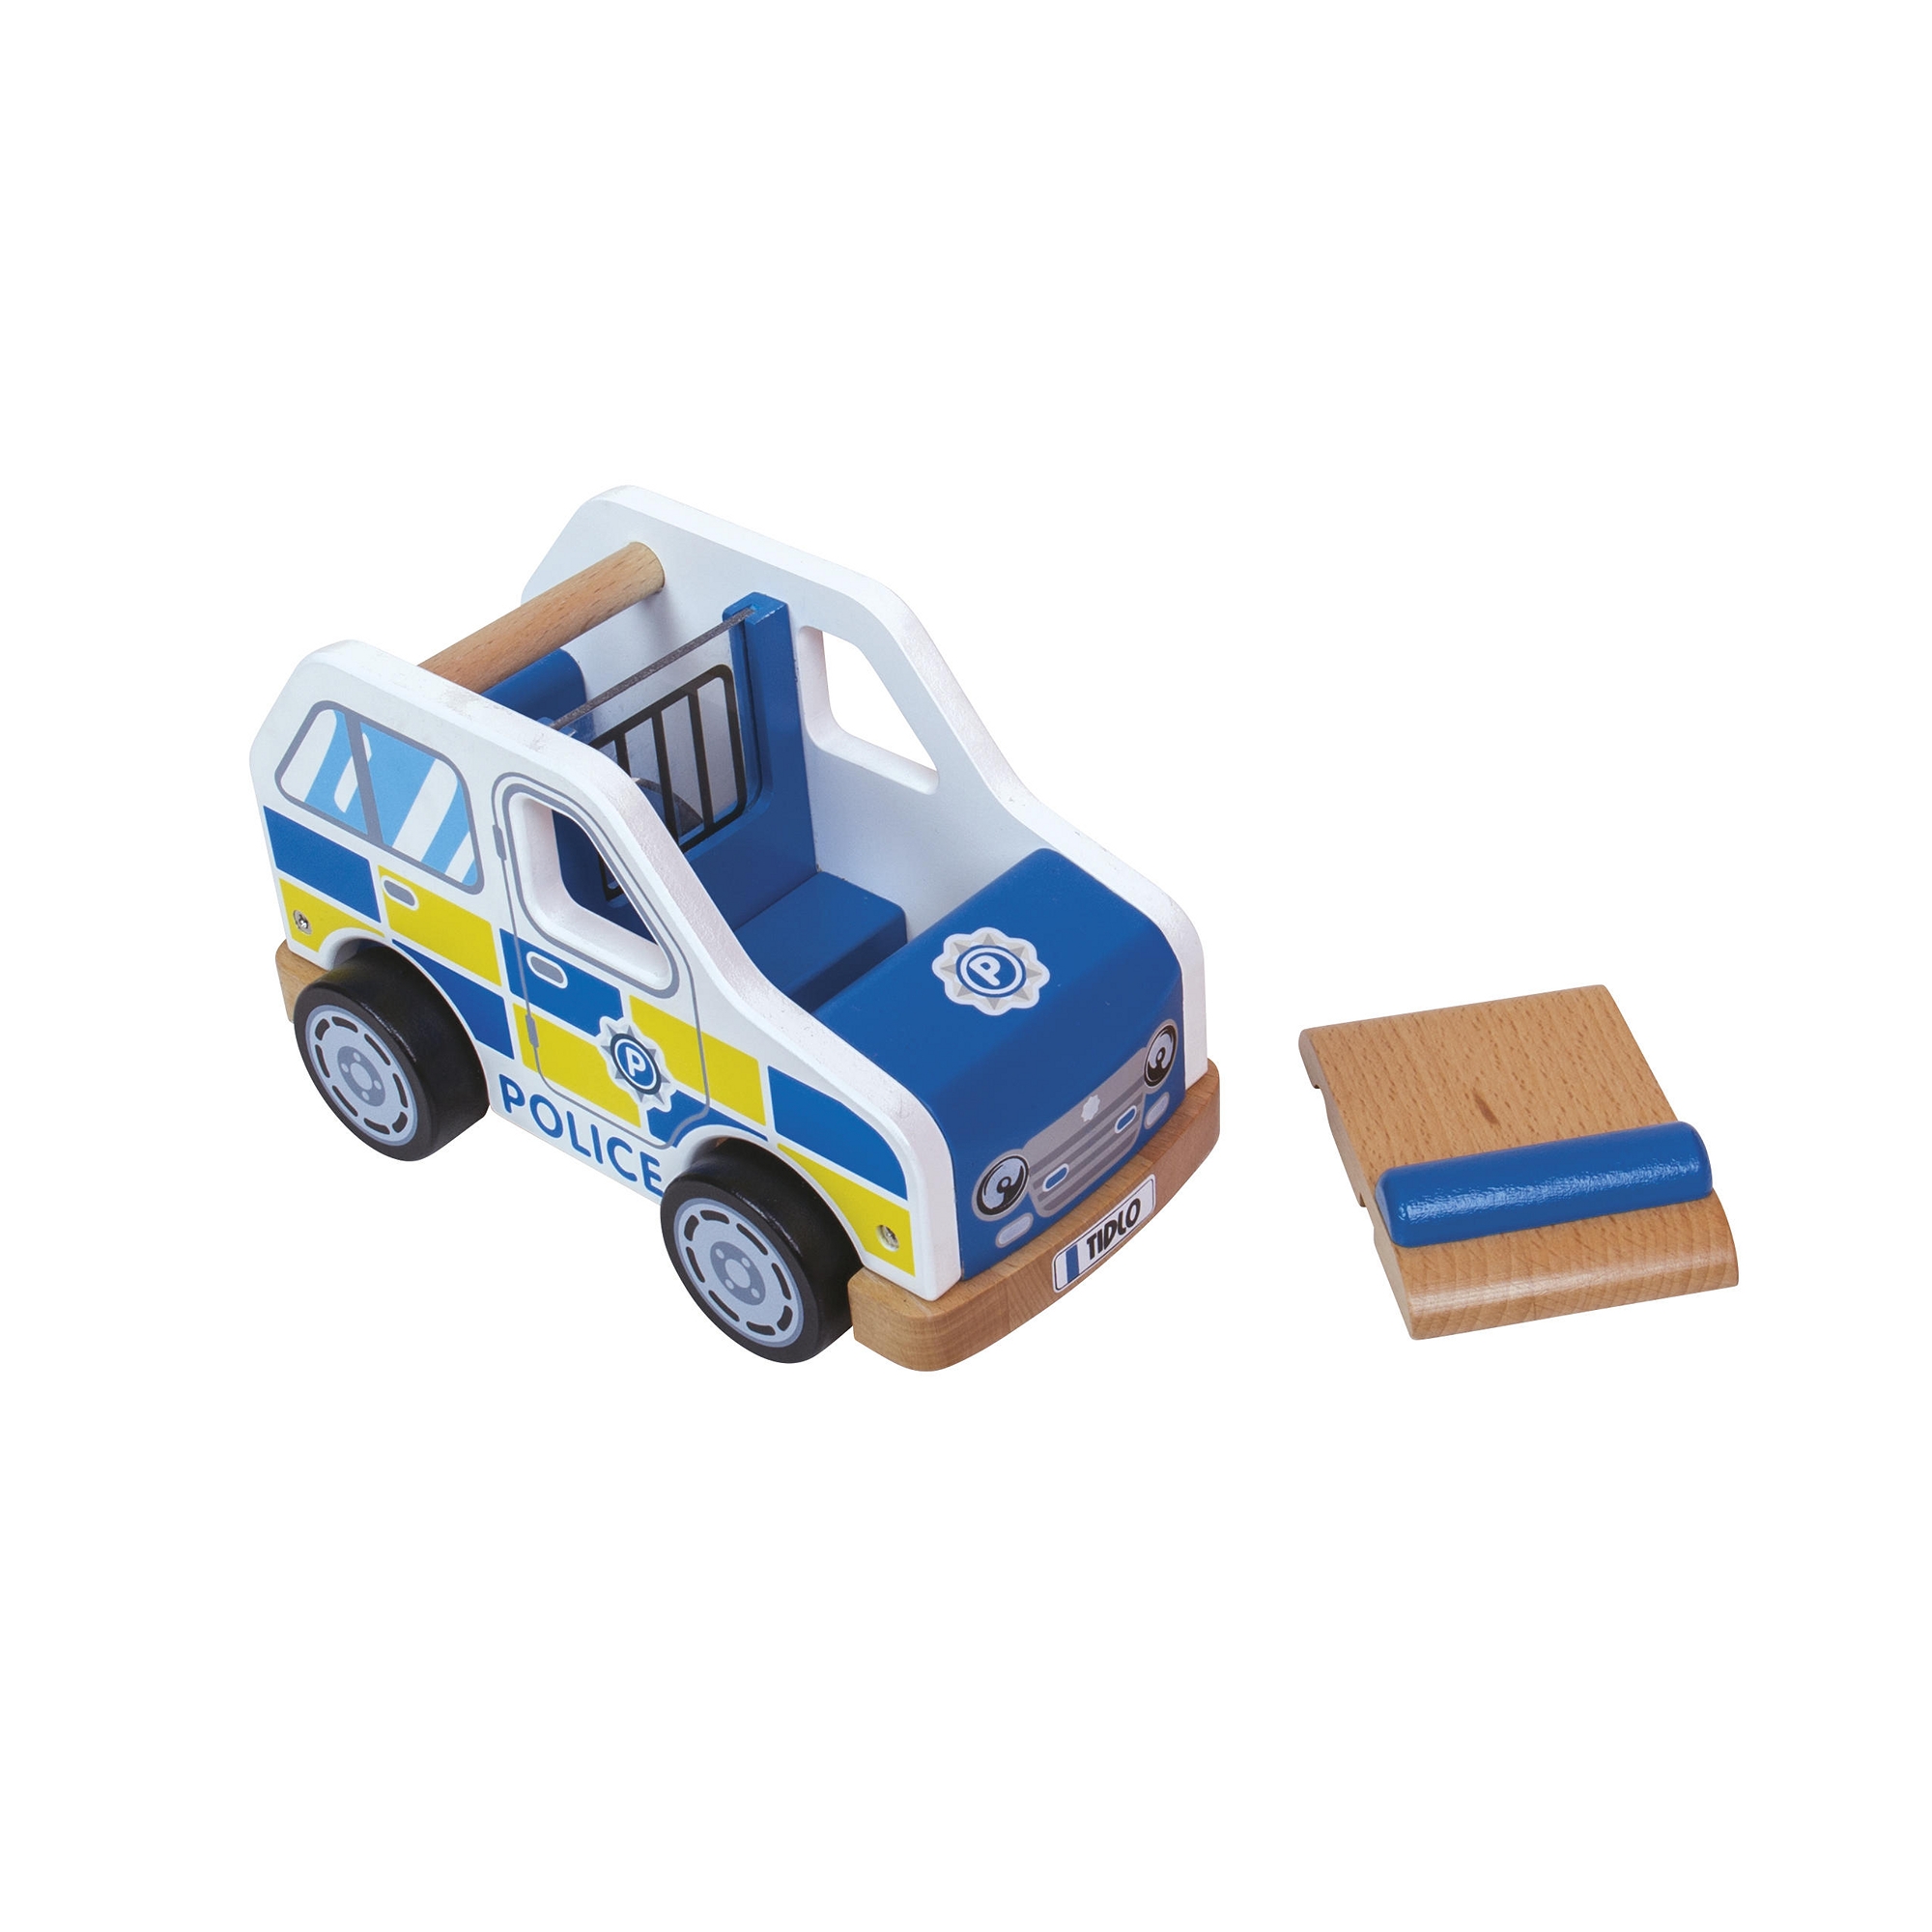 Tidlo Police Car